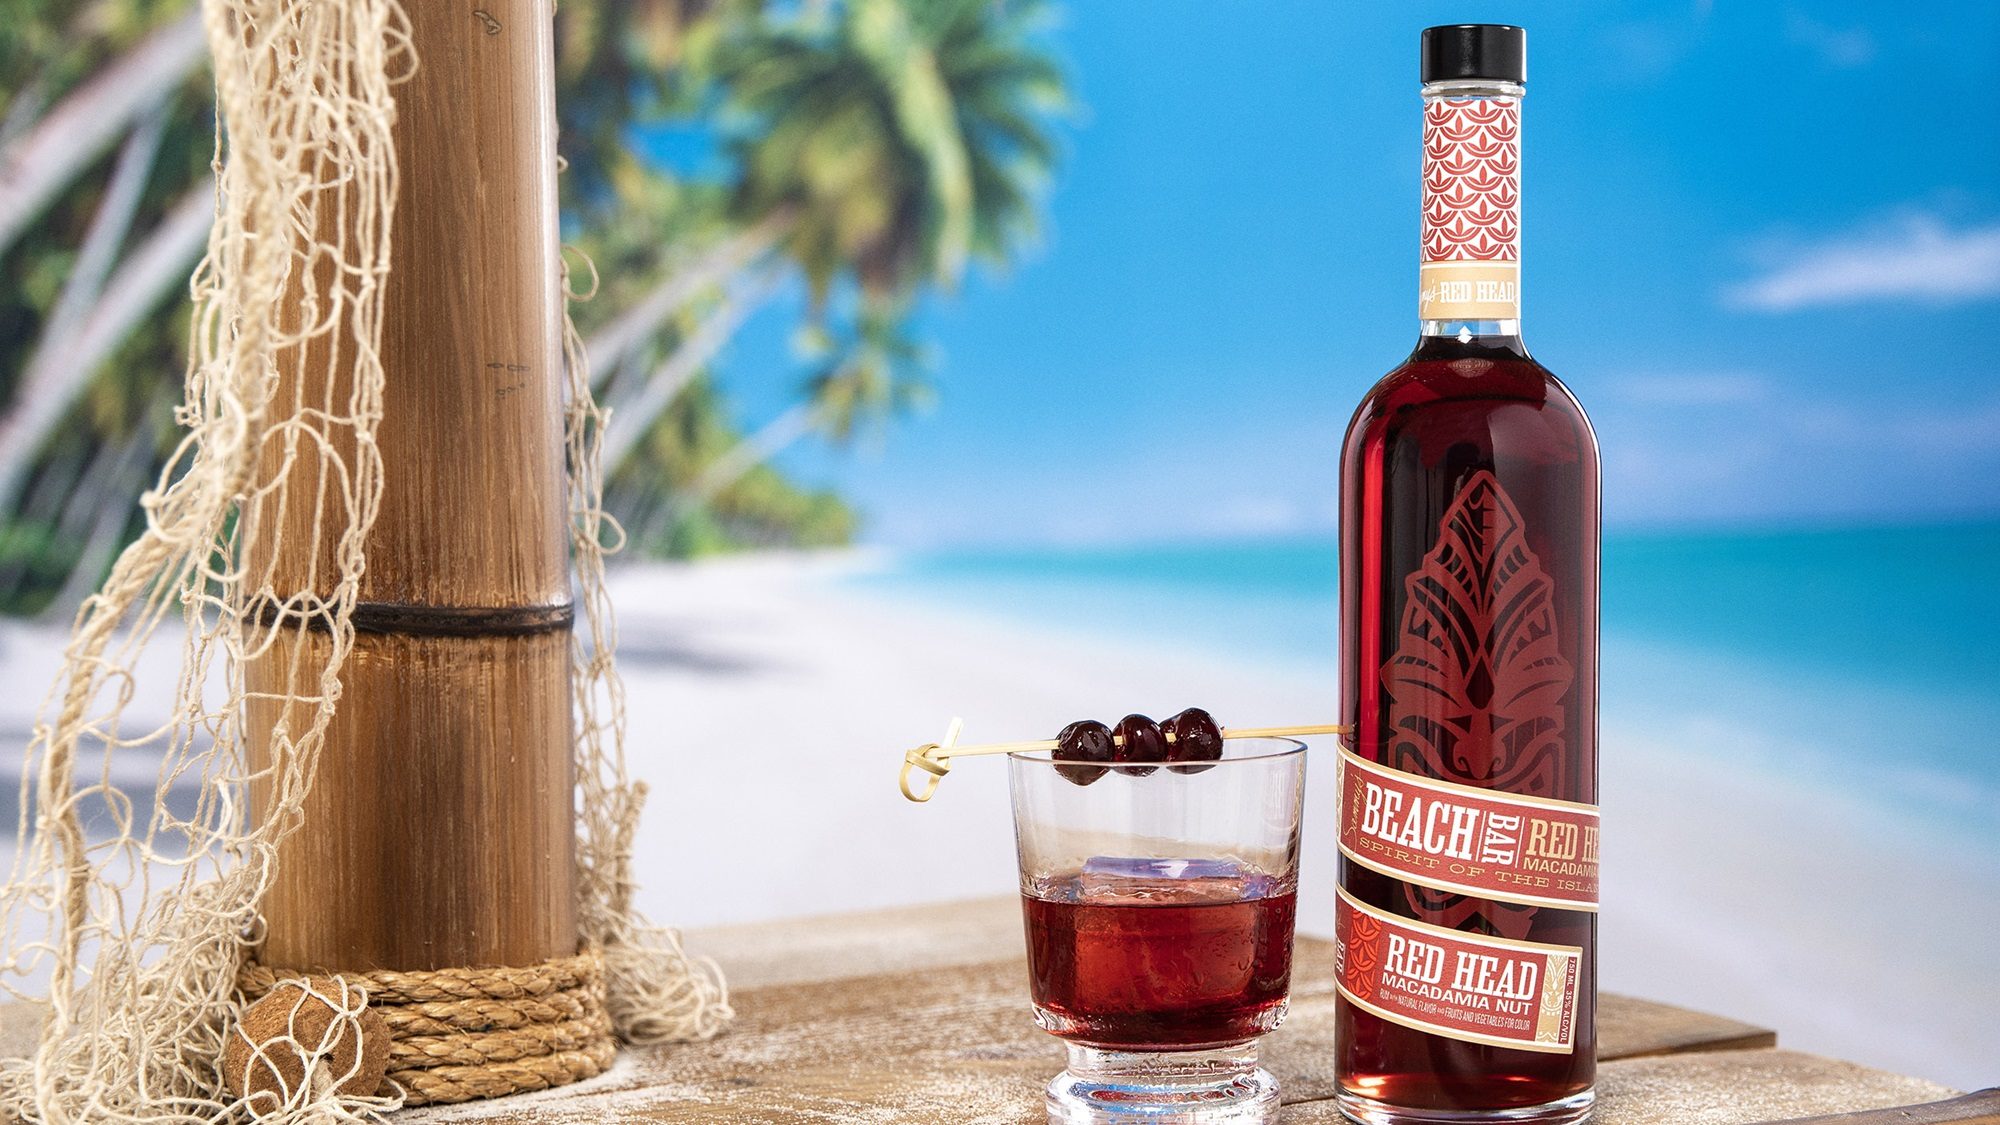 Sammy's Beach Bar Rum Reveals New Red Head Flavor